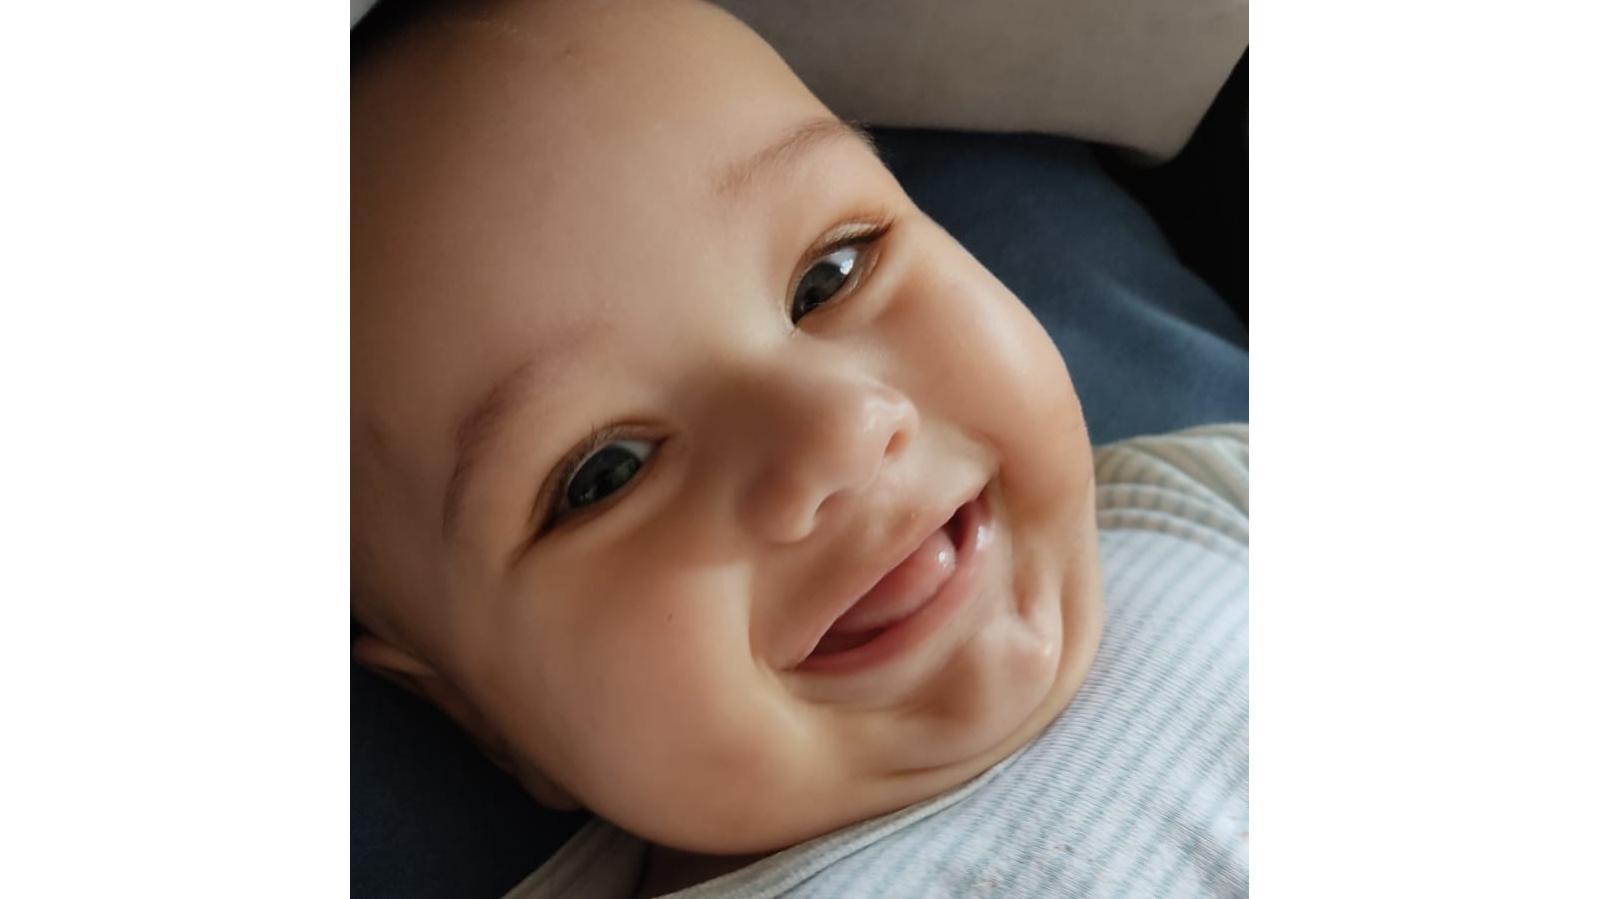 Morte de bebê de 8 meses comove moradores de Presidente Getúlio; ele sofreu uma parada cardiorrespiratória